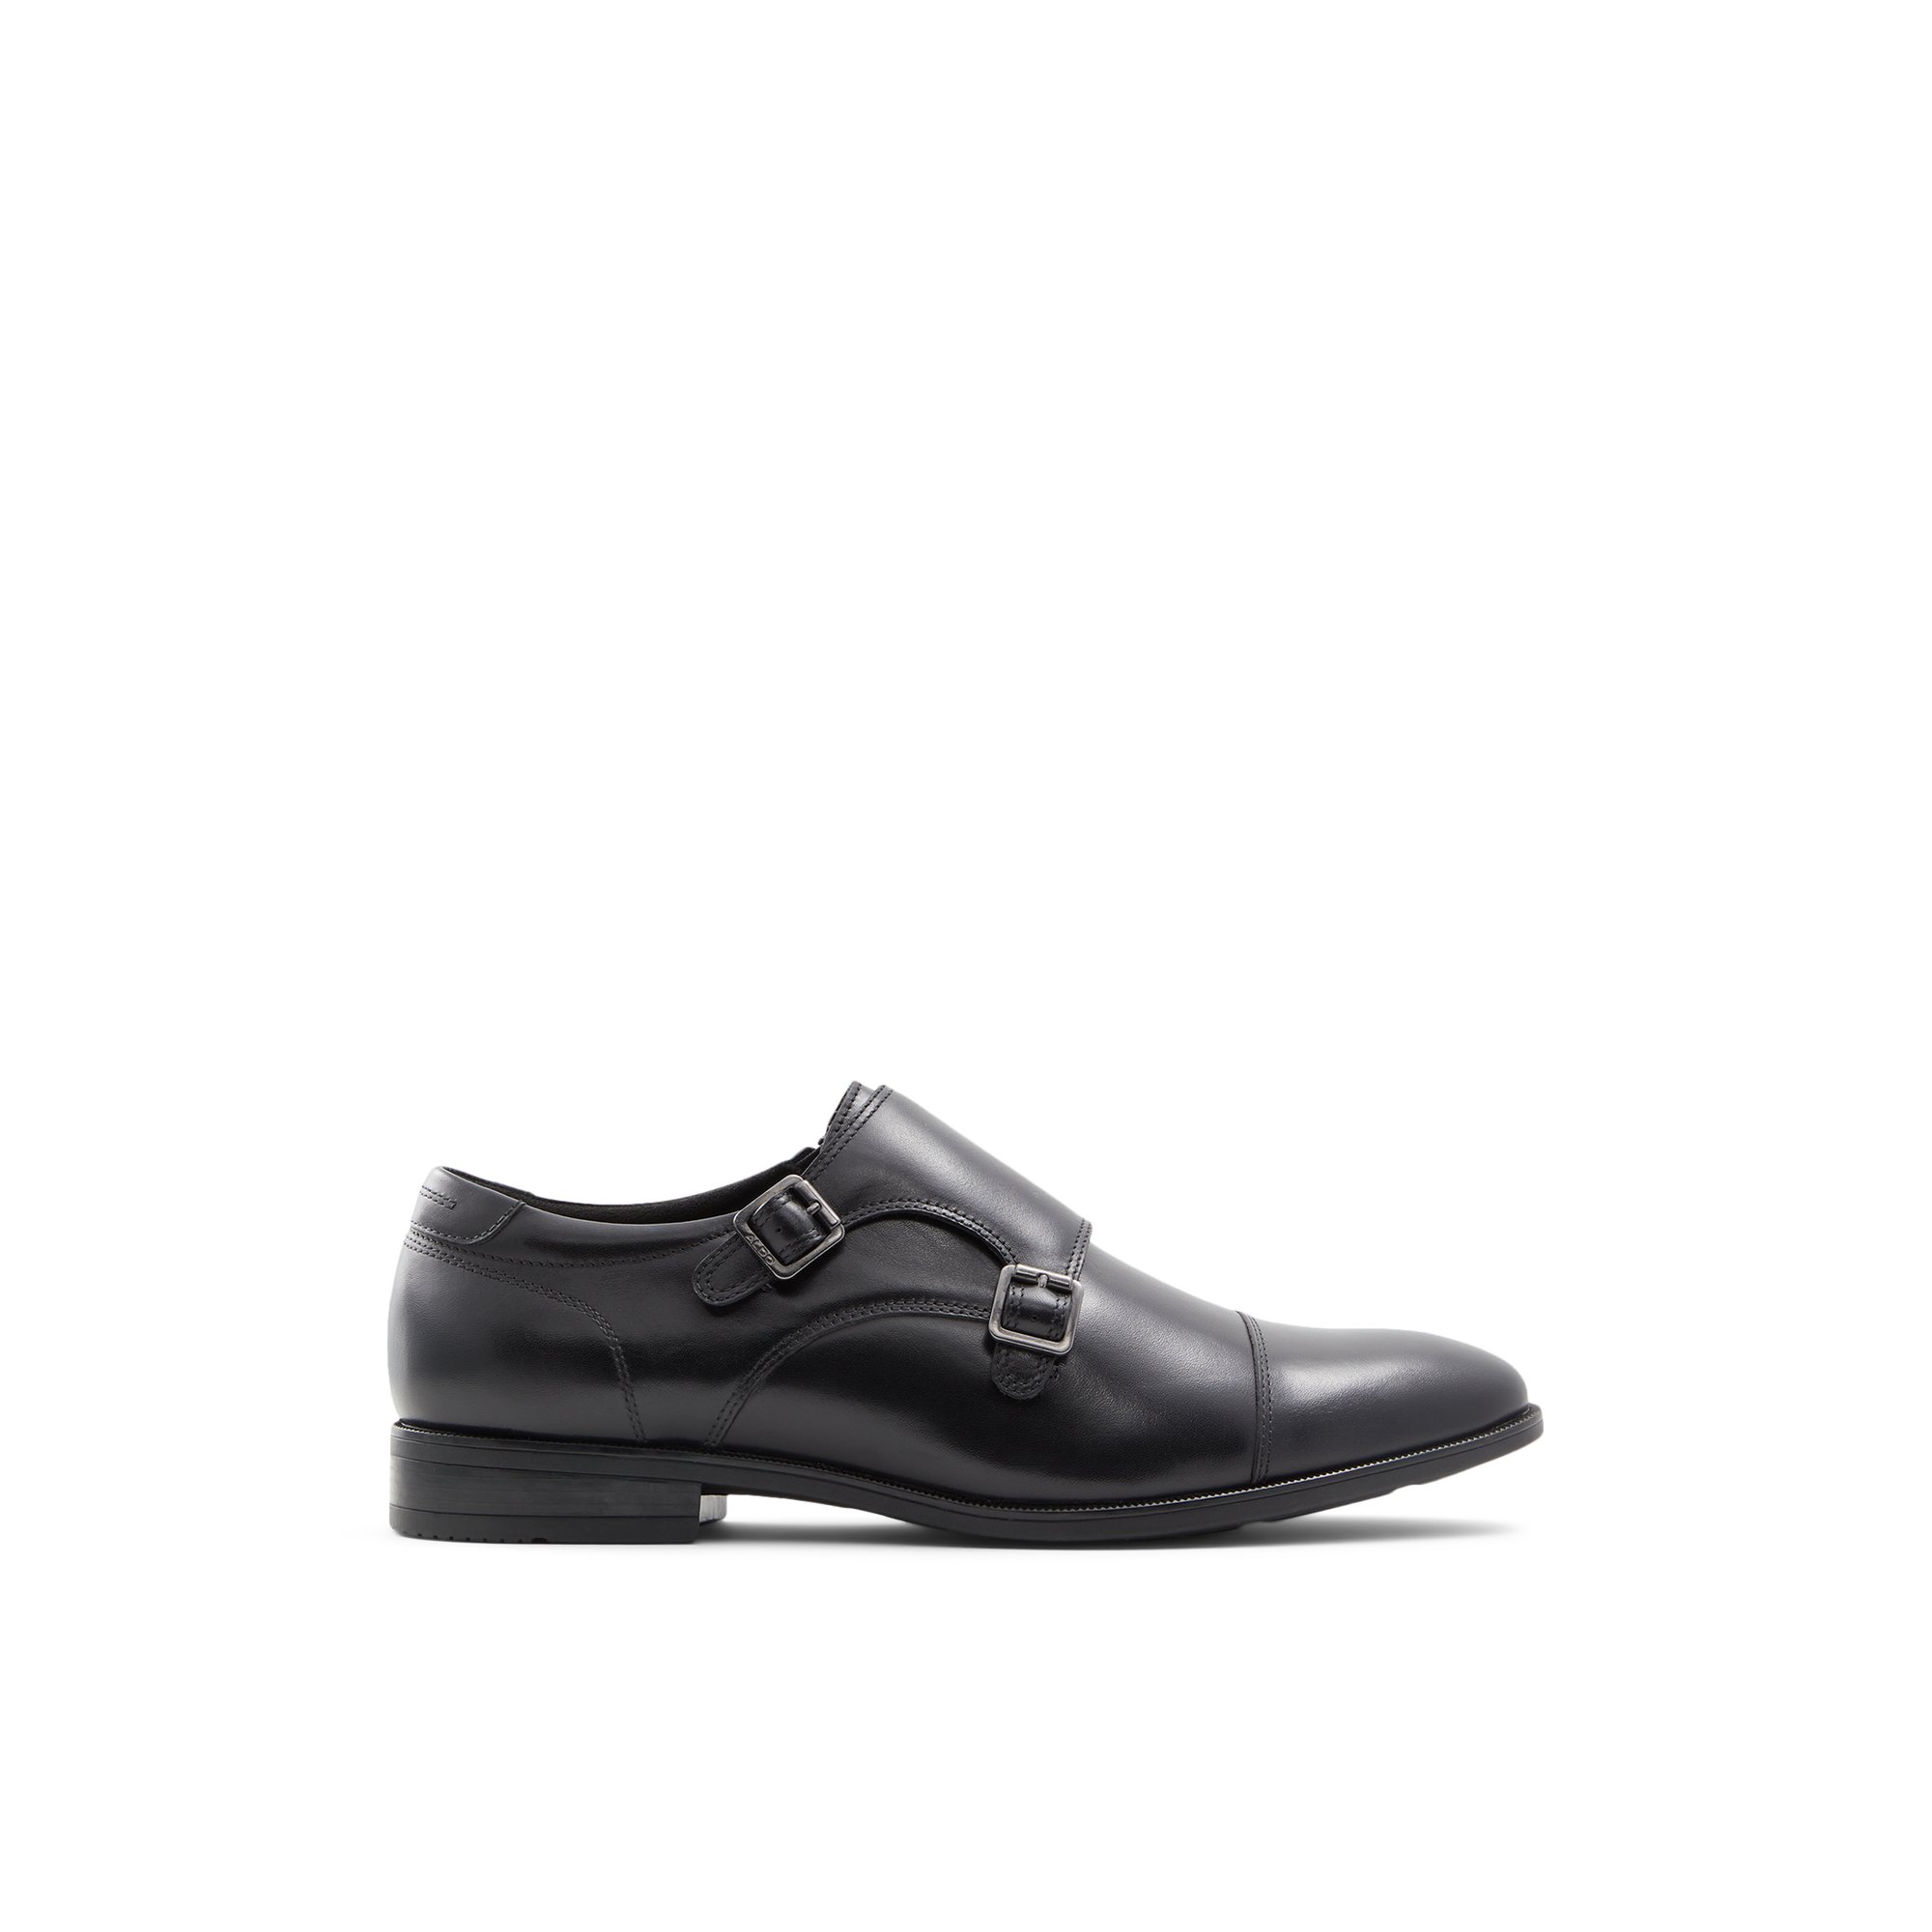 ALDO Holtlanflex - Men's Loafers and Slip on - Black